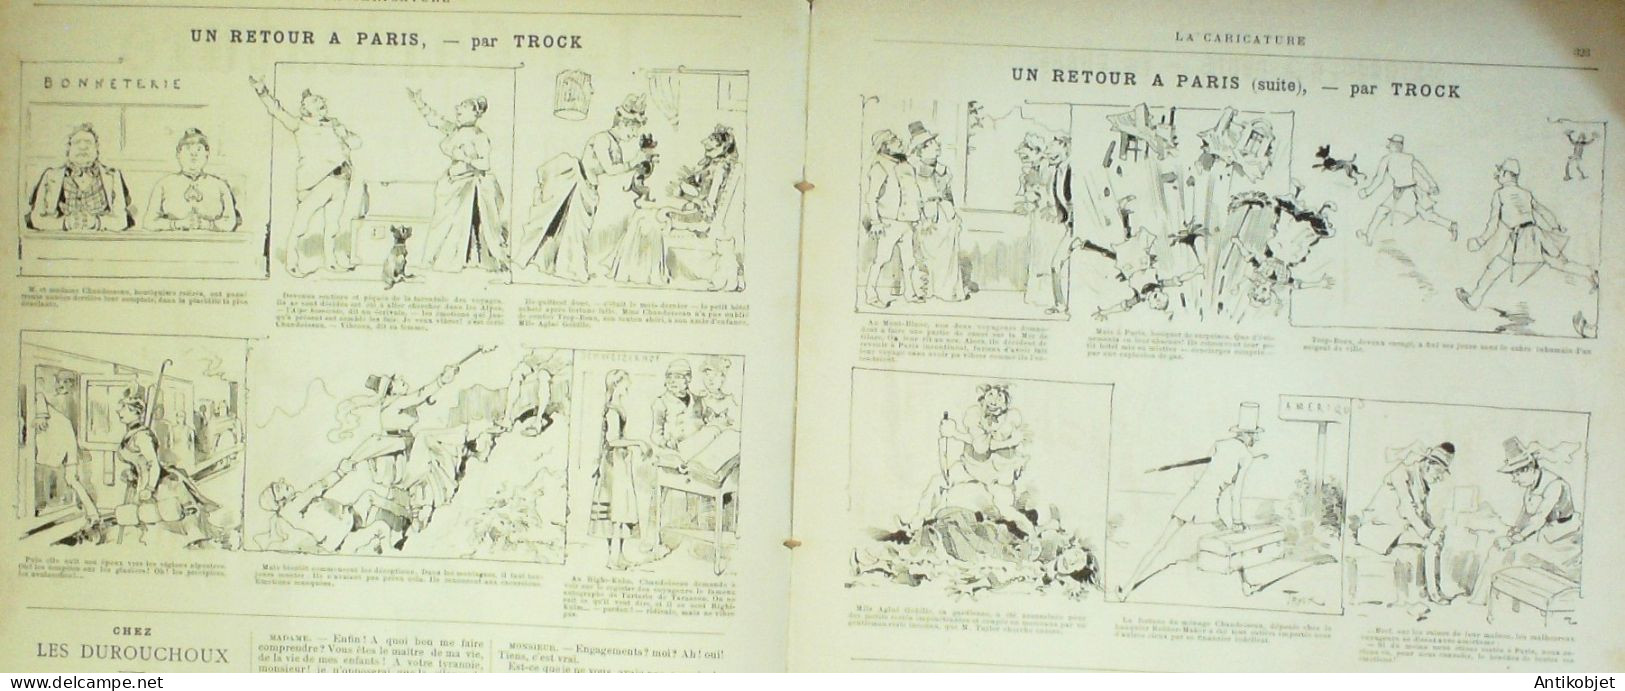 La Caricature 1886 N°353 Candeur Caran D'Ache Leroy Par Luque Chasseurs Draner Sorel Trock - Riviste - Ante 1900